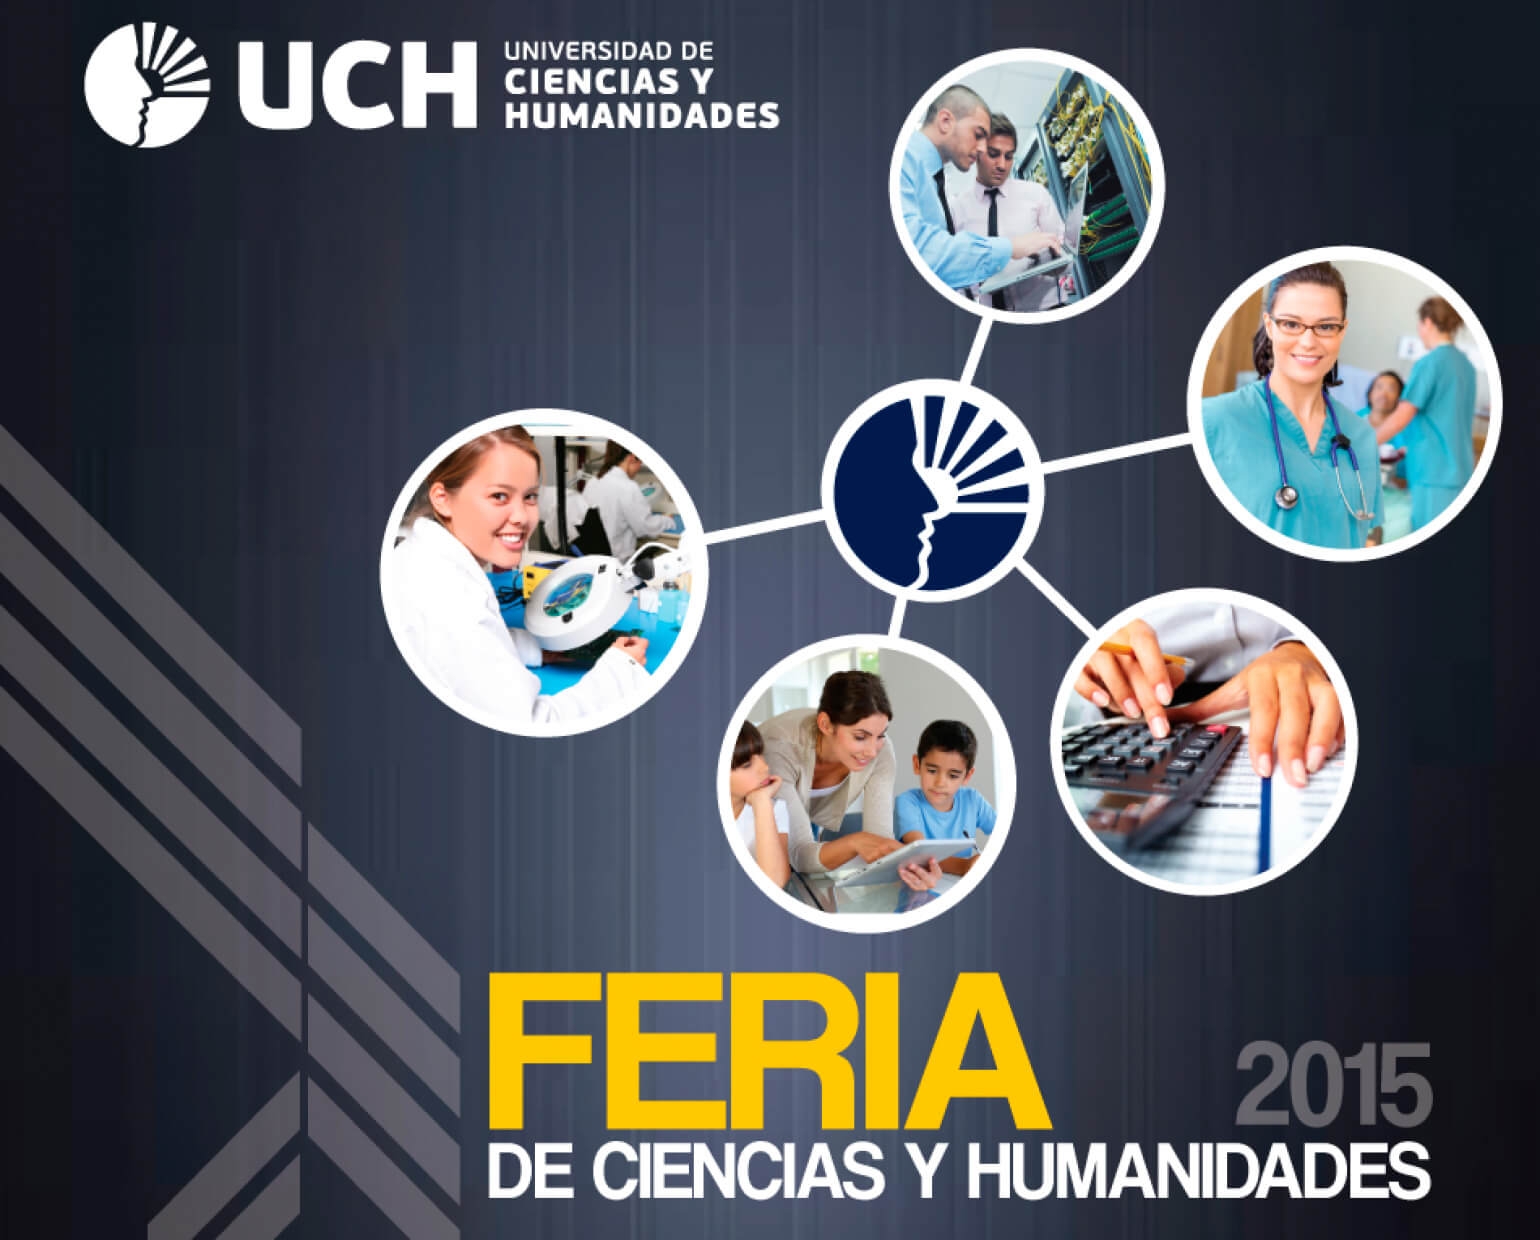 Feria de Ciencias y Humanidades UCH